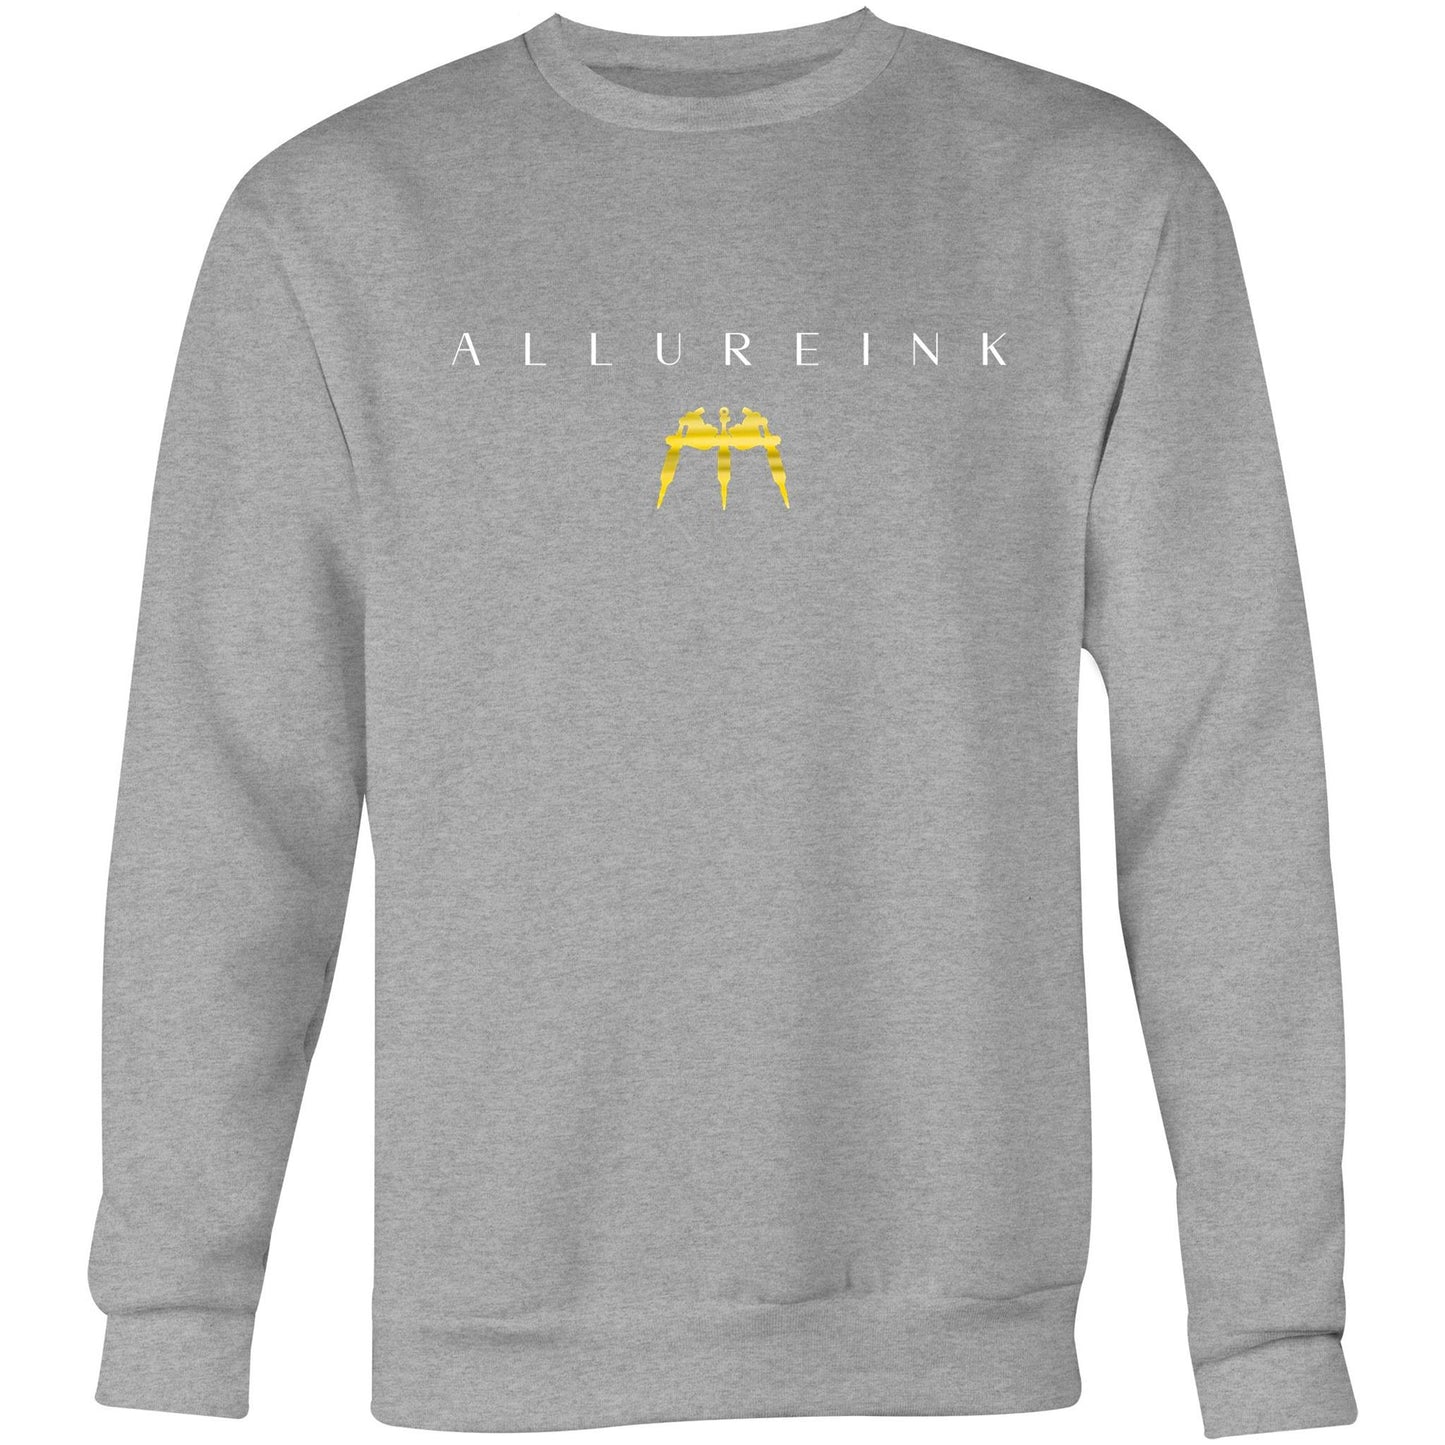 Allure Ink sweater pro wear range 2023 model